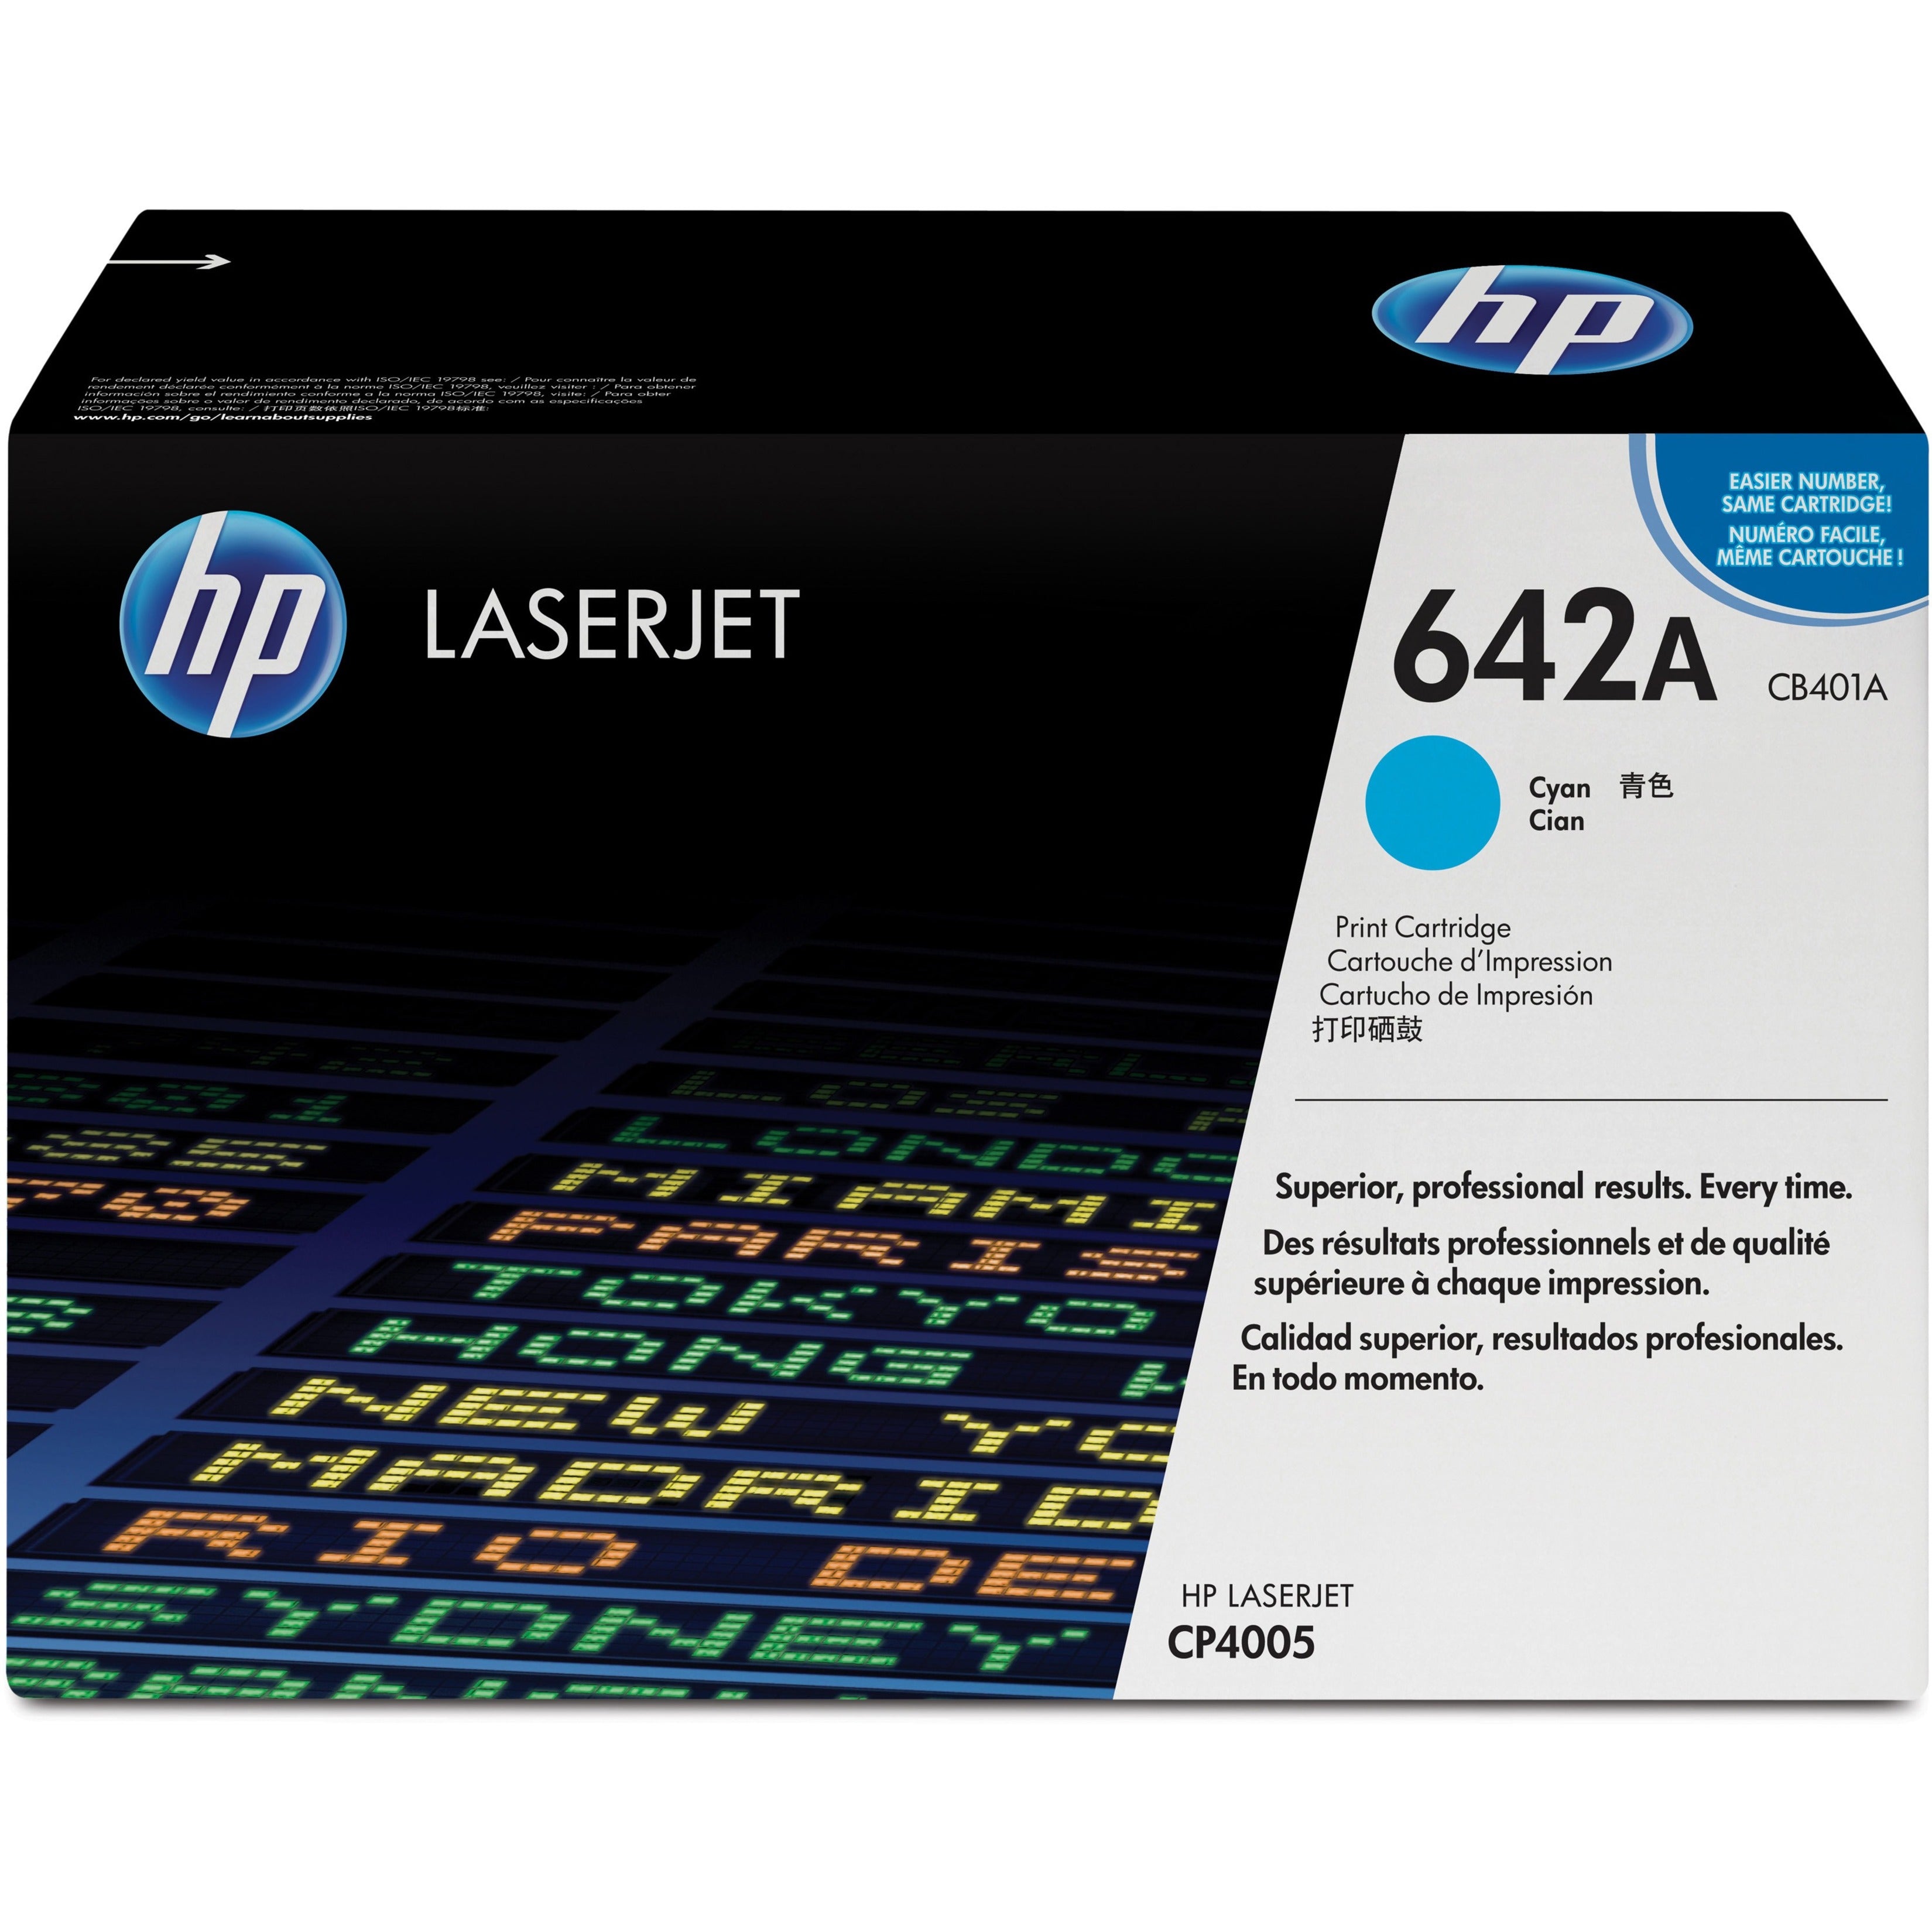 HP CB401A 642A LaserJet Print Cartridge, Cyan, 7500 Page Yield